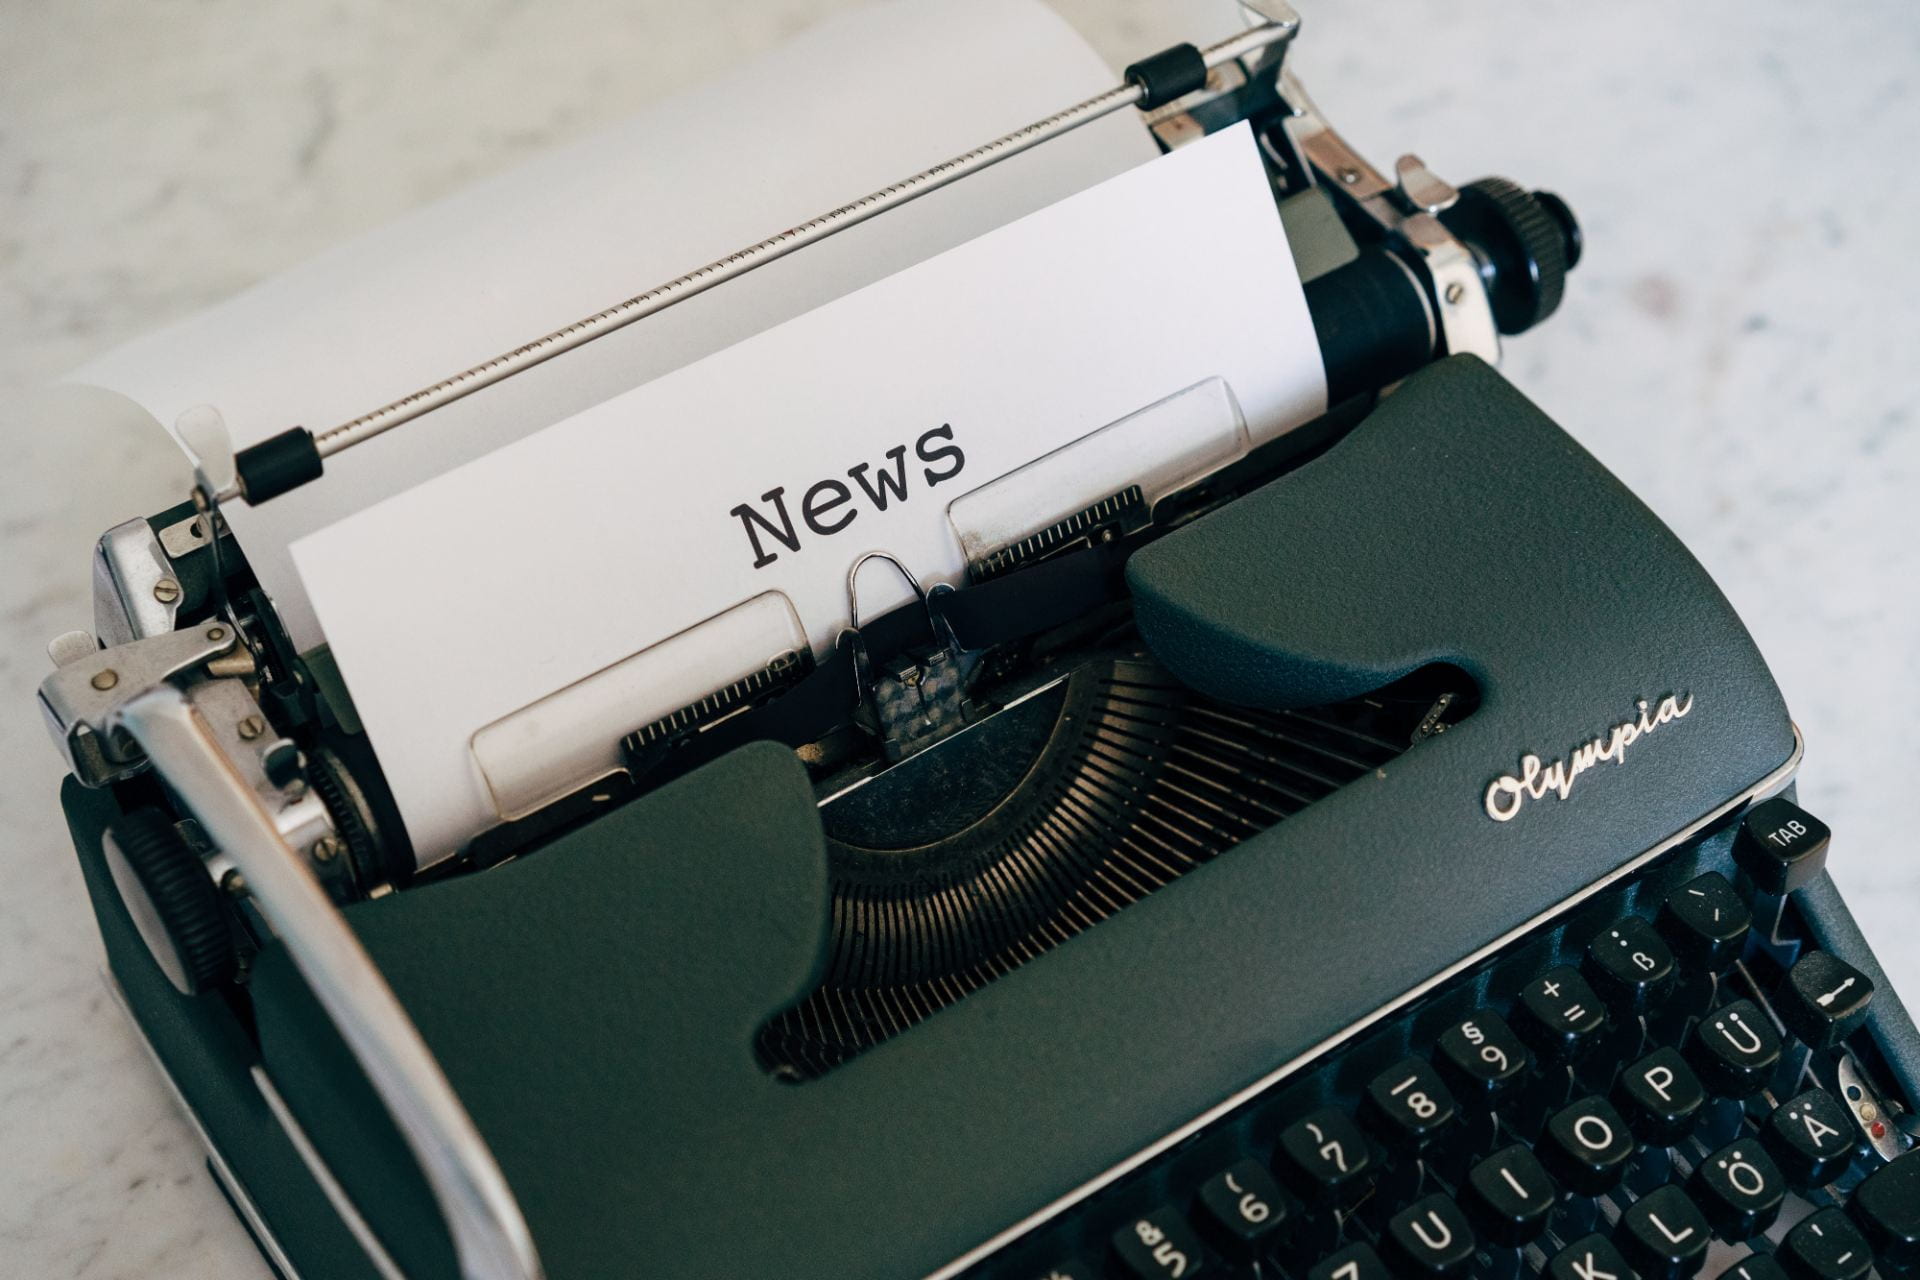 Typewriter displaying a piece of paper saying "news".